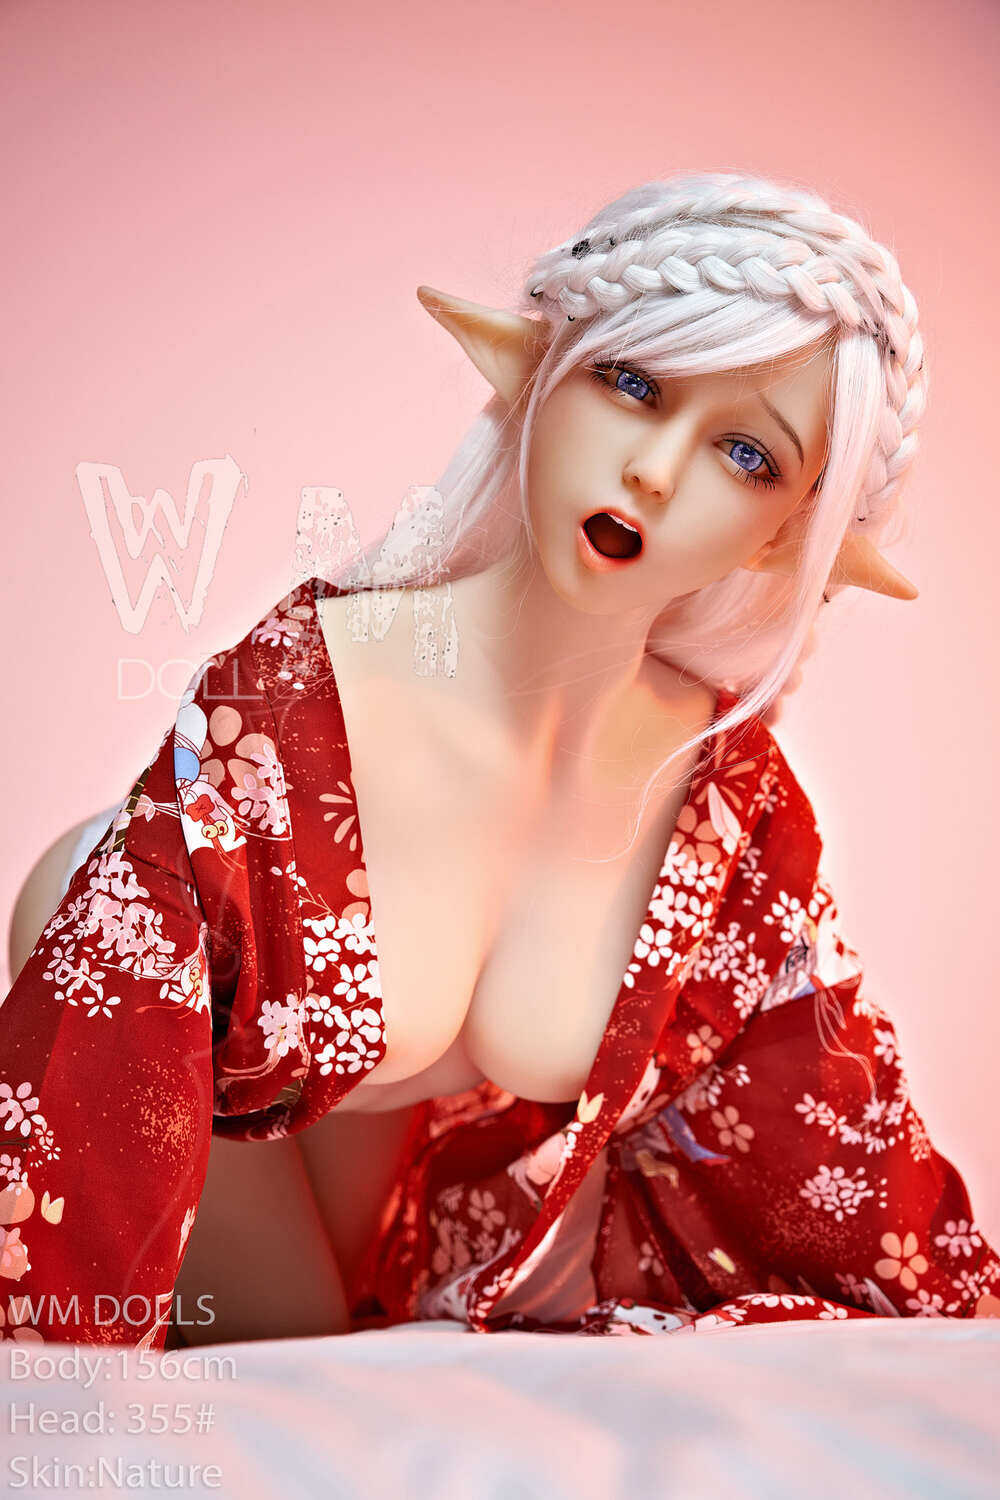 Avryl - Medium Breast 156cm(5ft1) C-Cup Pretty Thin Waist TPE WM Dolls image4